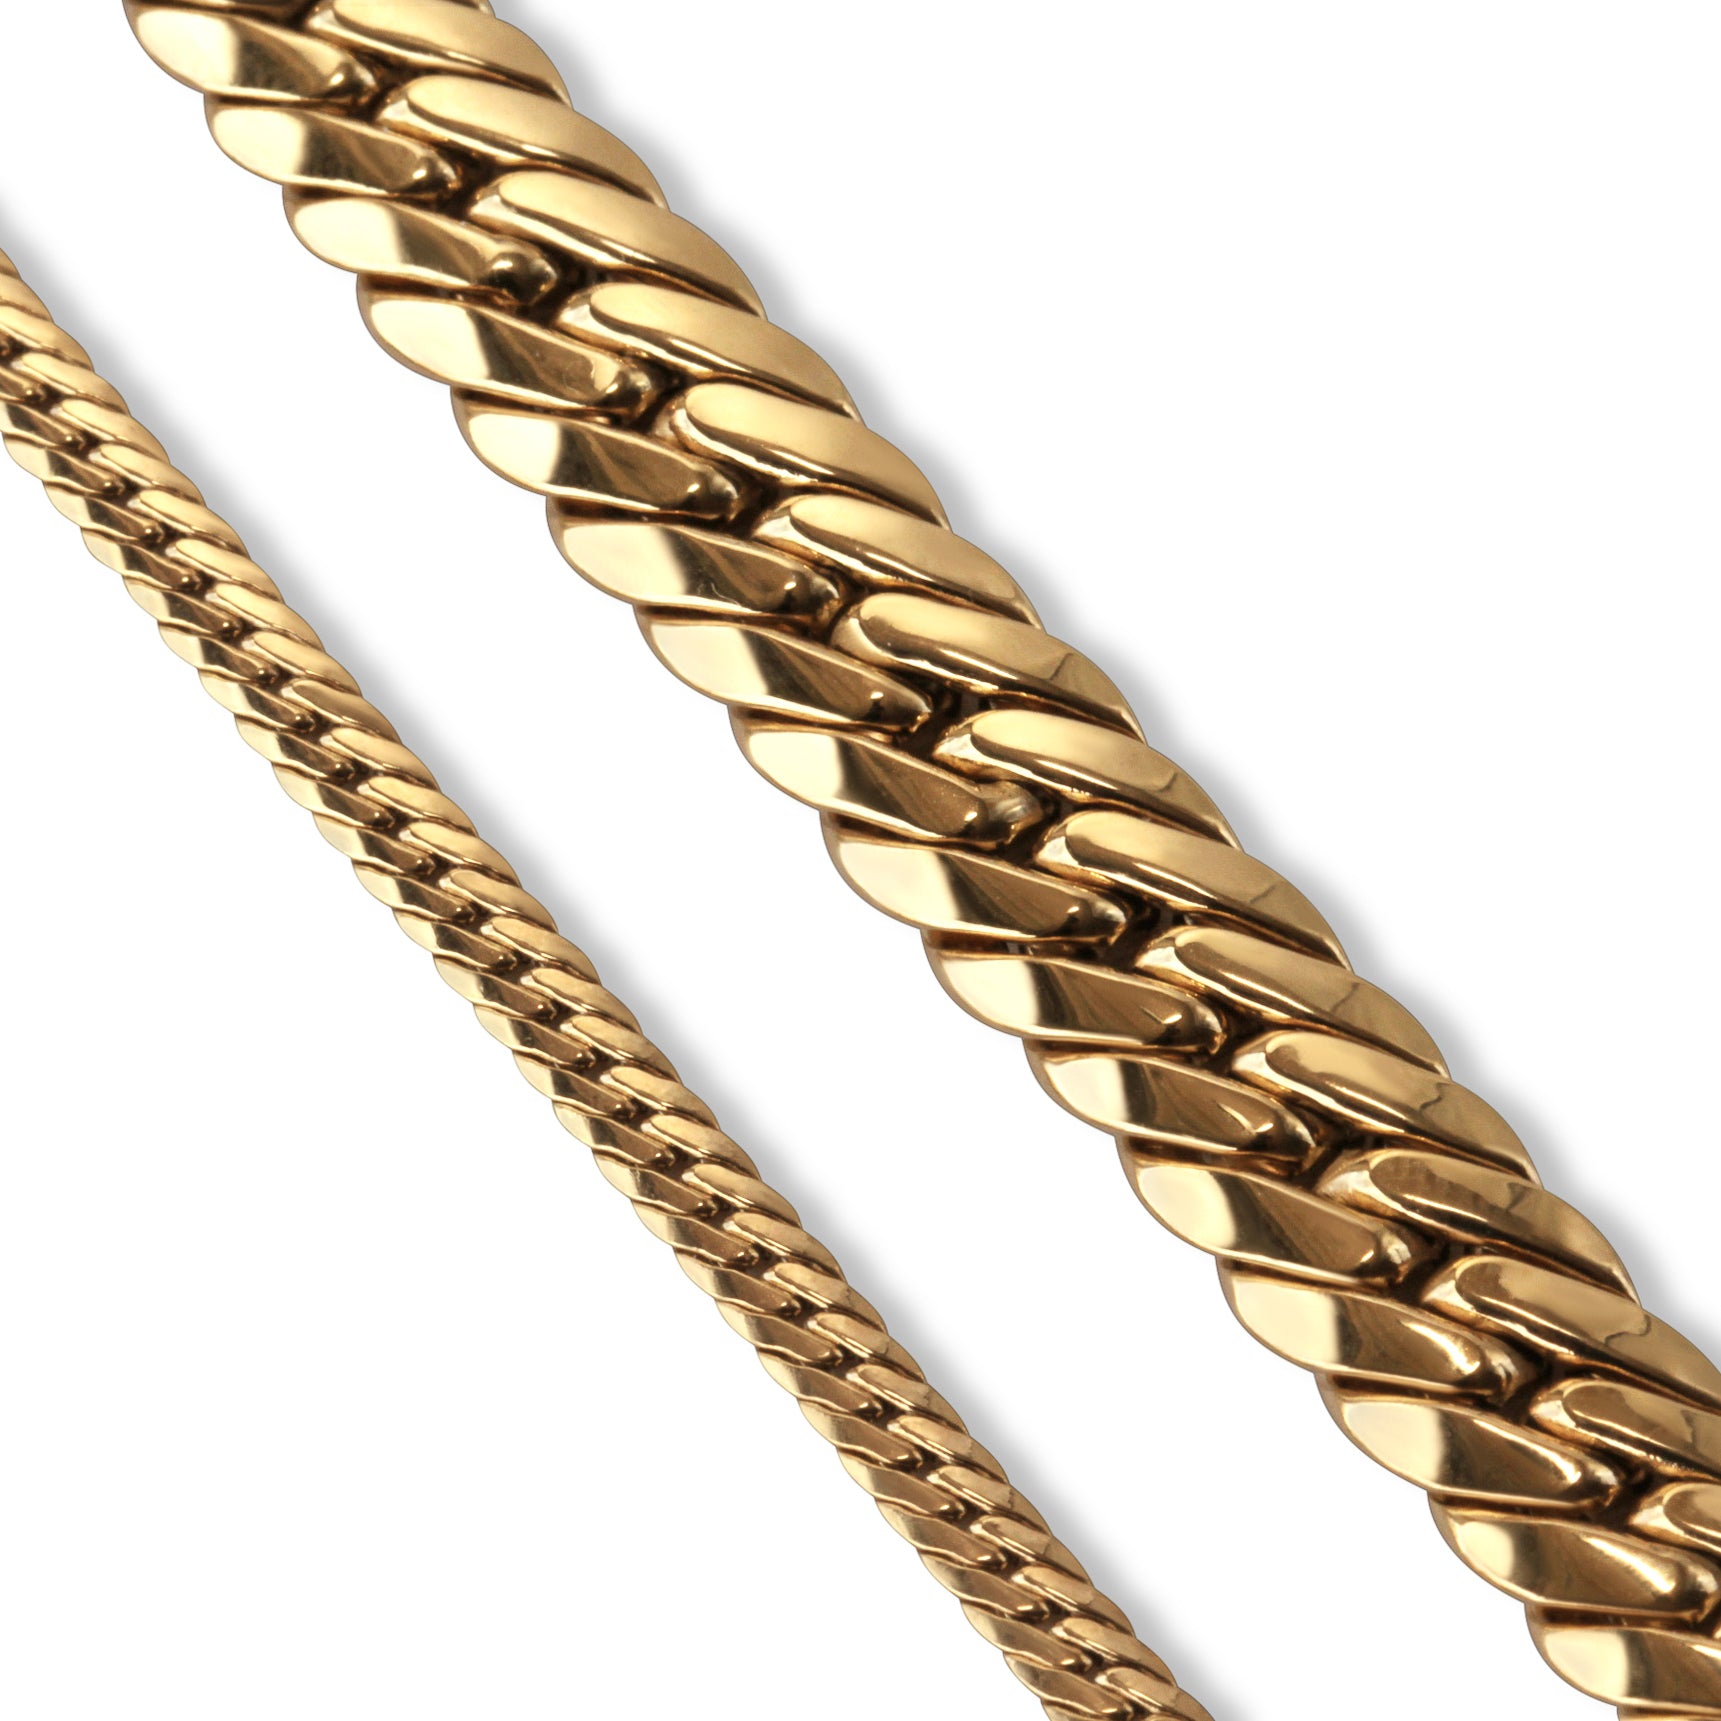 gold bracelet texture comparison